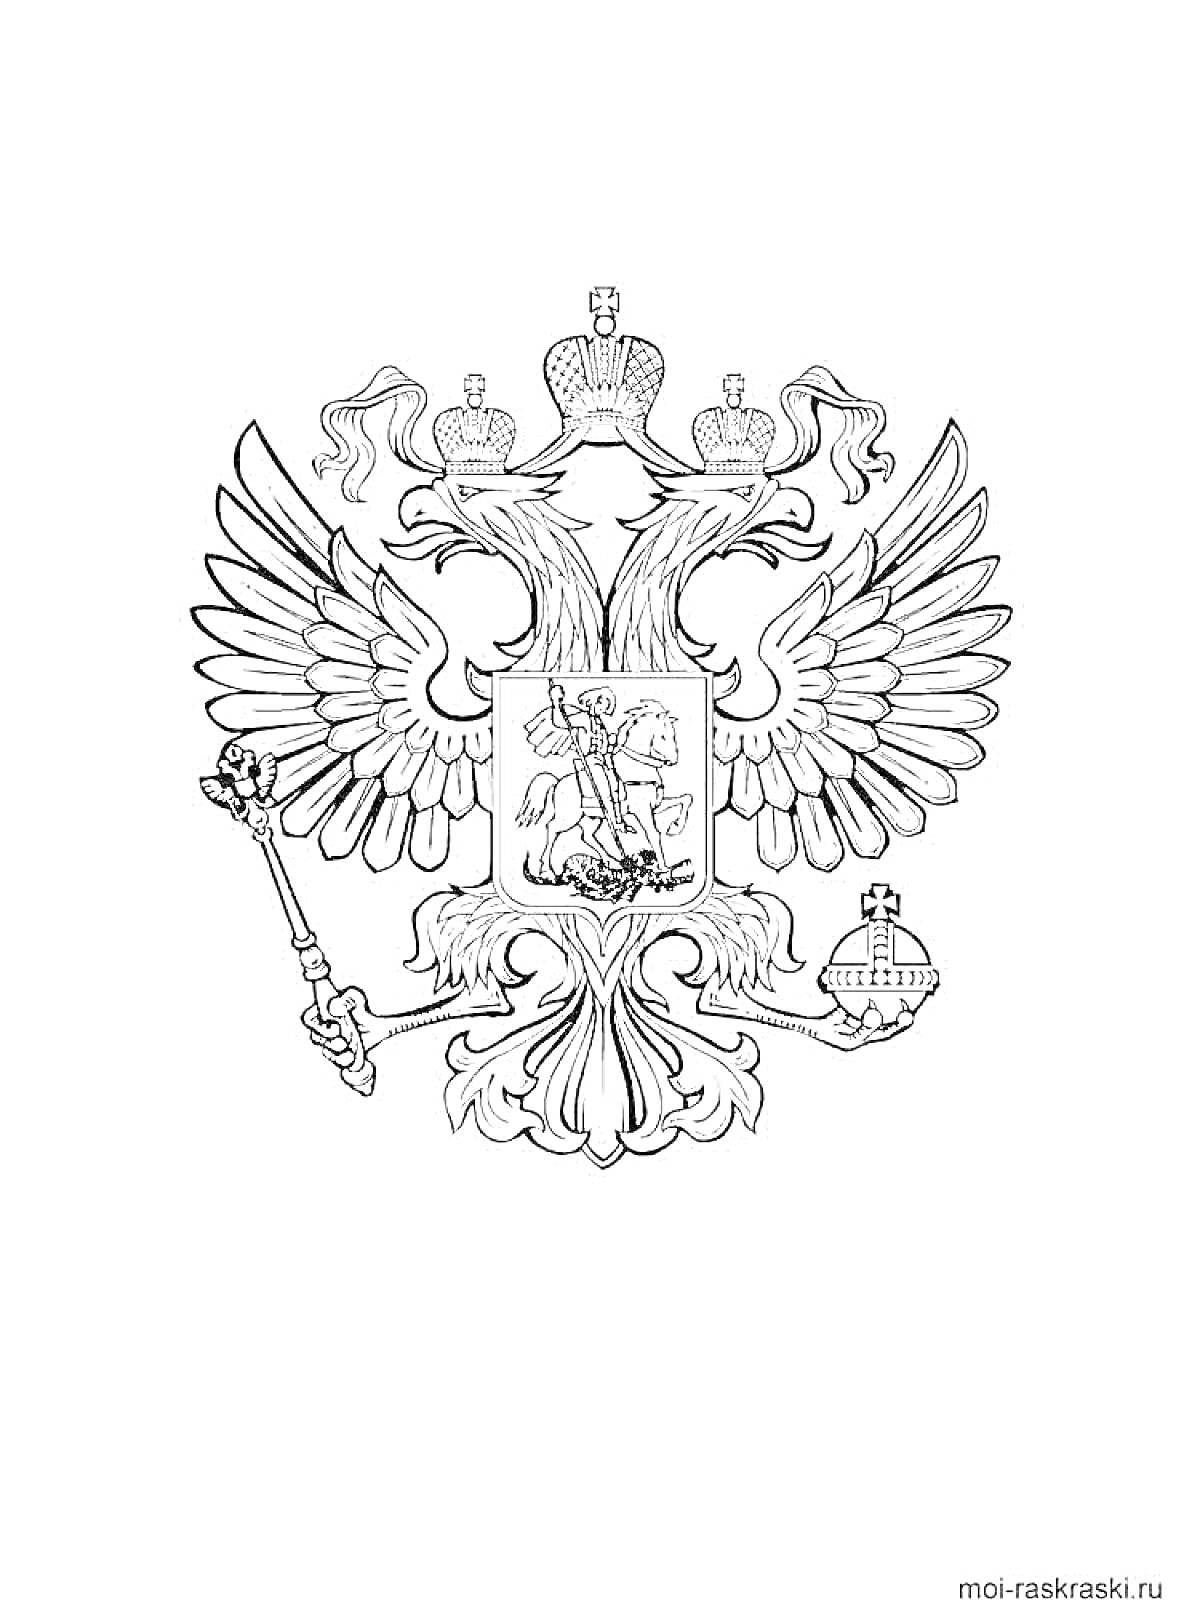 Раскраска Герб с двухглавым орлом, тремя коронами, жезлом, державой и всадником с копьем